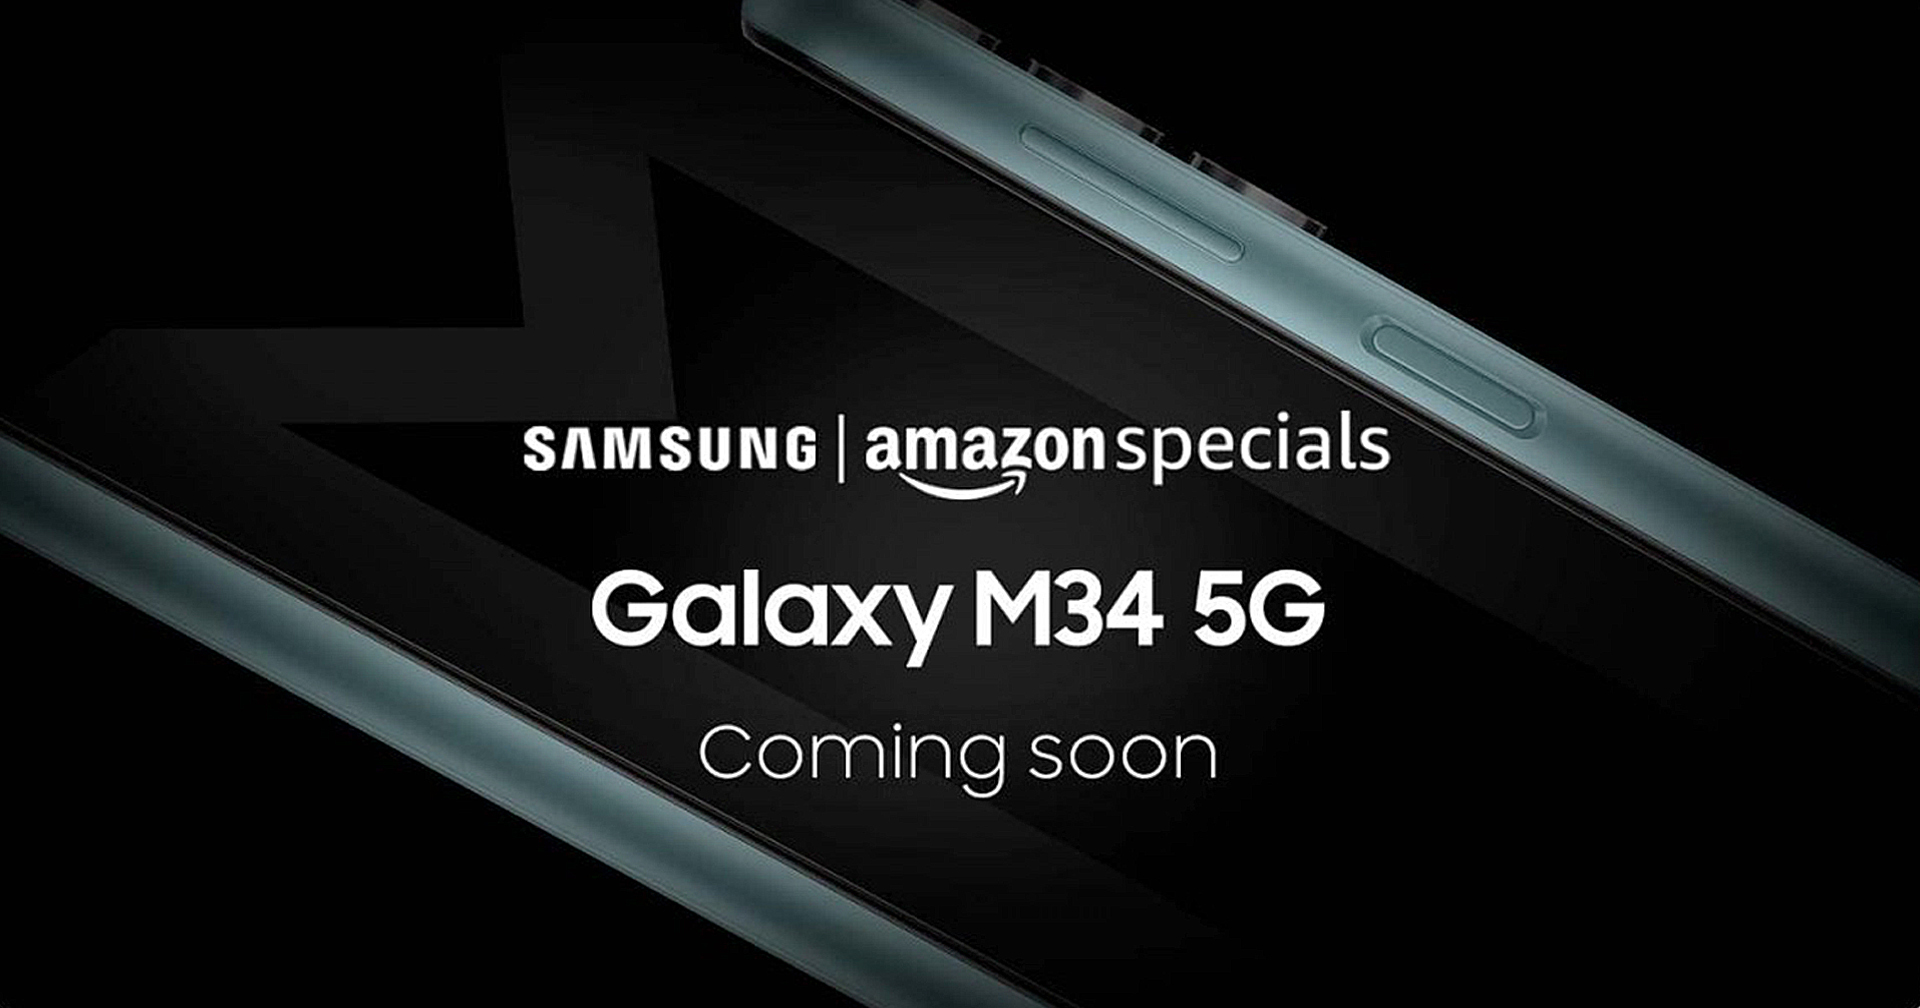 หลุดสเปก Samsung Galaxy M34 5G พร้อมดีไซน์ ก่อนเปิดตัว 7 ก.ค. นี้